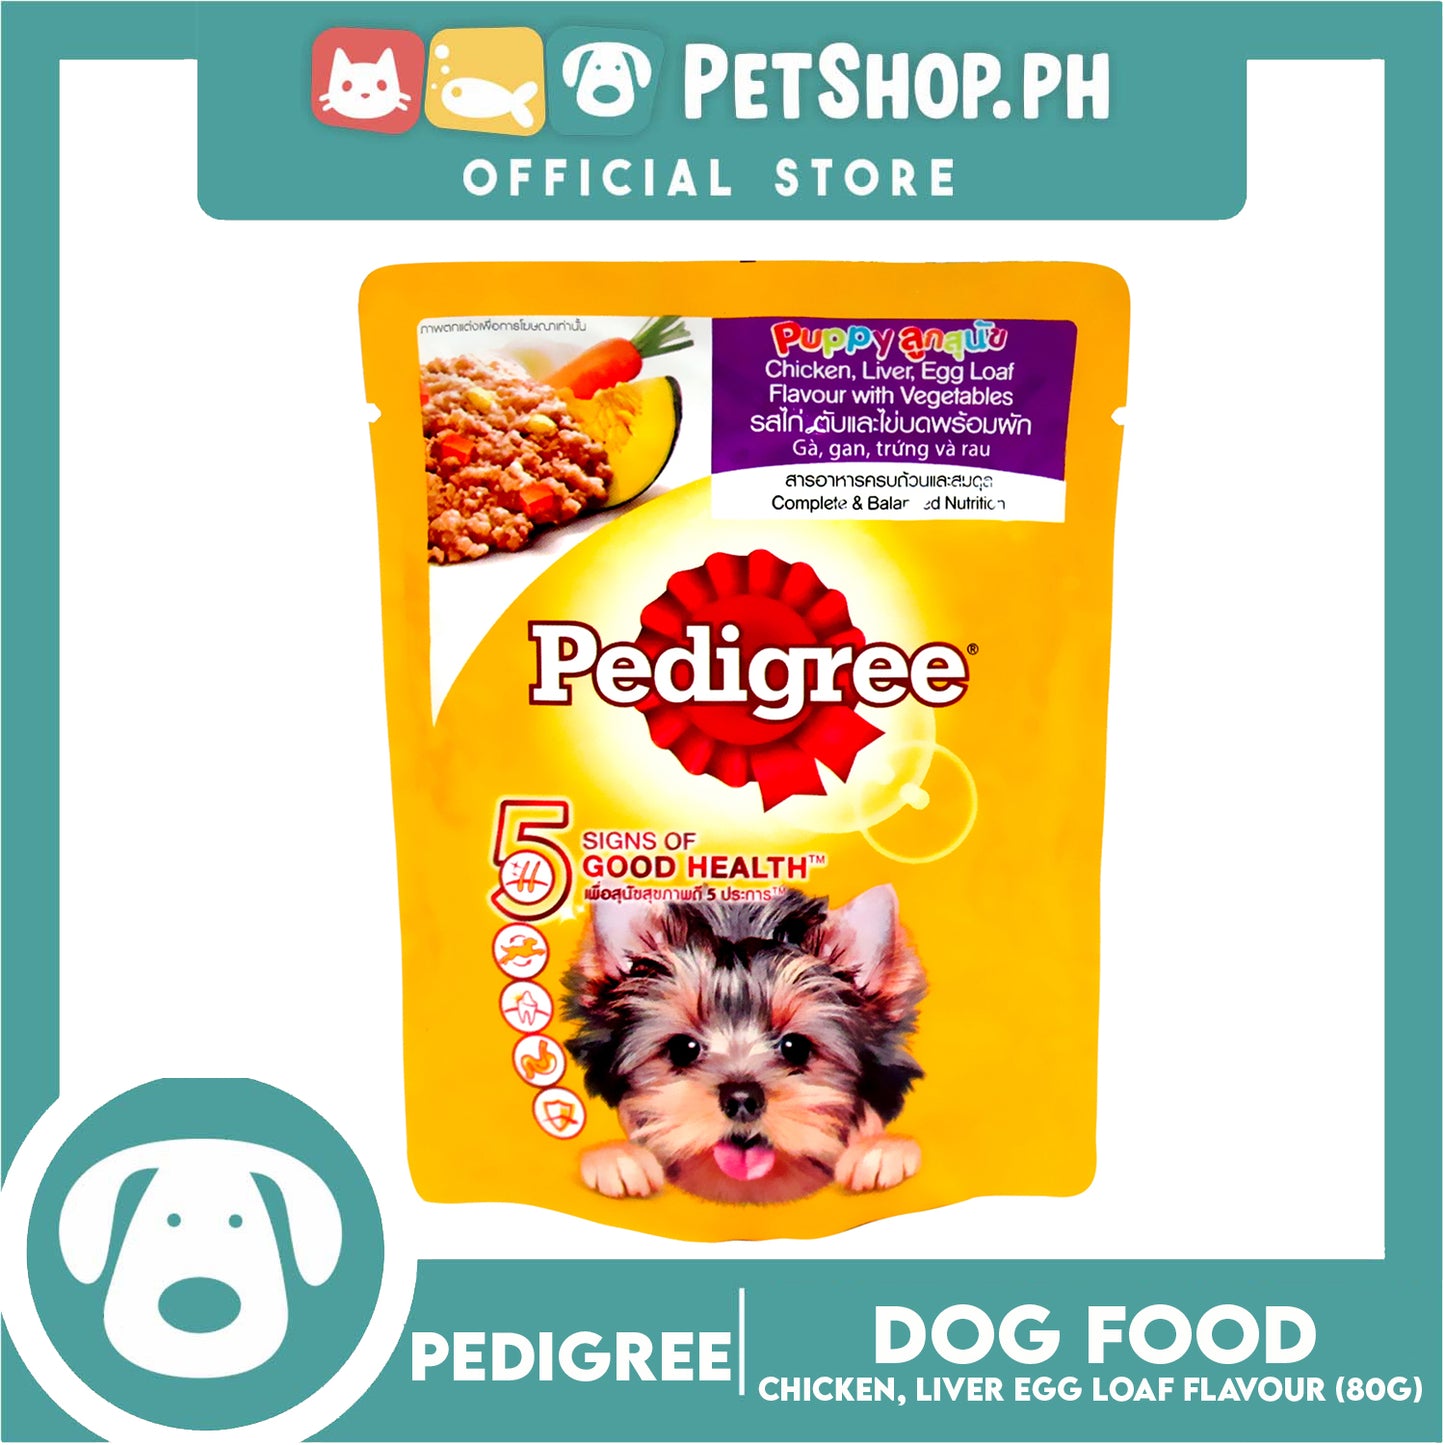 Pedigree Puppy Chicken, Liver, Egg Loaf Flavor with Vegetables 80g Dog Wet Food